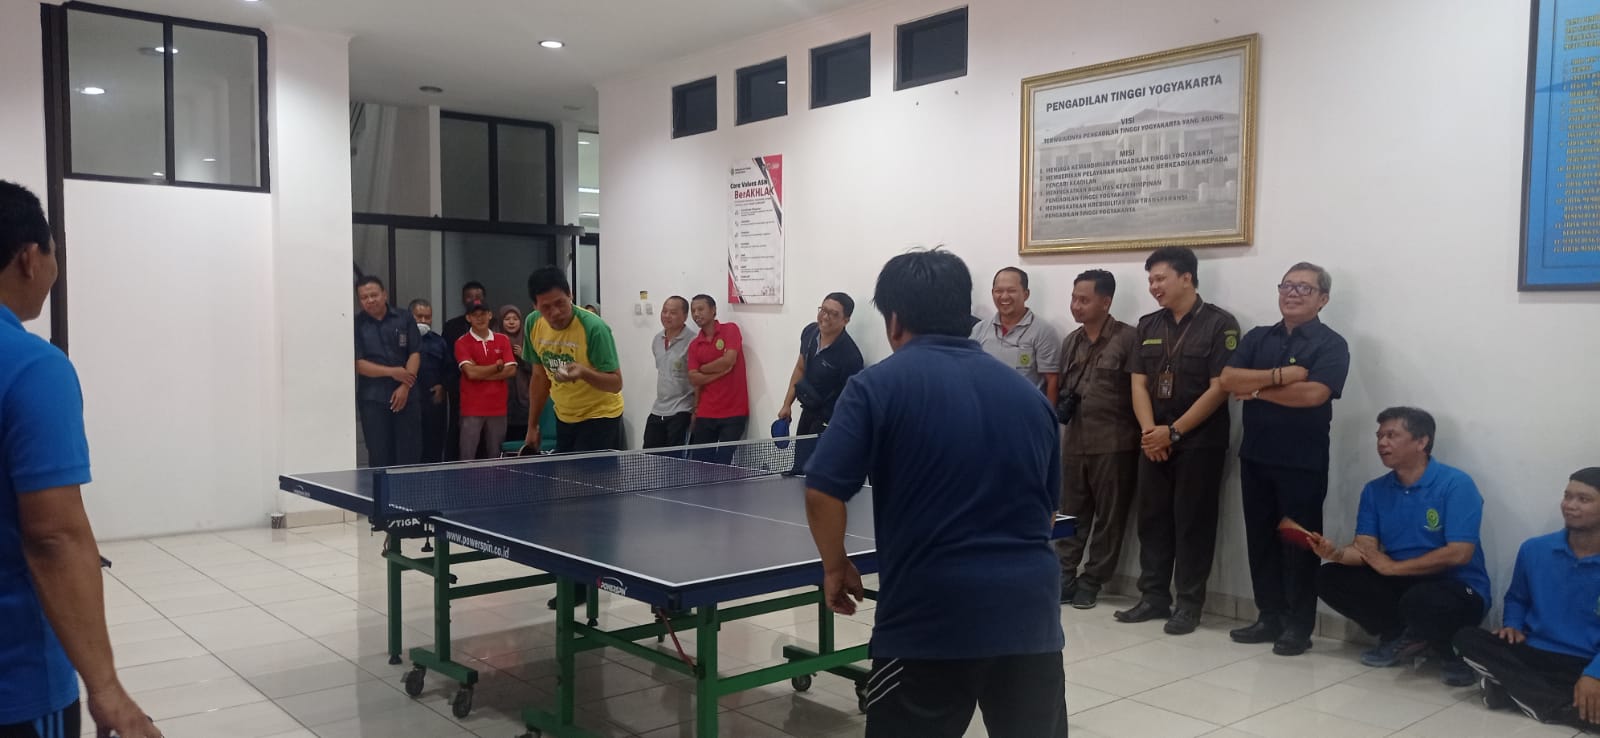 Pengadilan Negeri Yogyakarta Mengikuti Turnamen Tenis Meja KPT Yogyakarta Cup